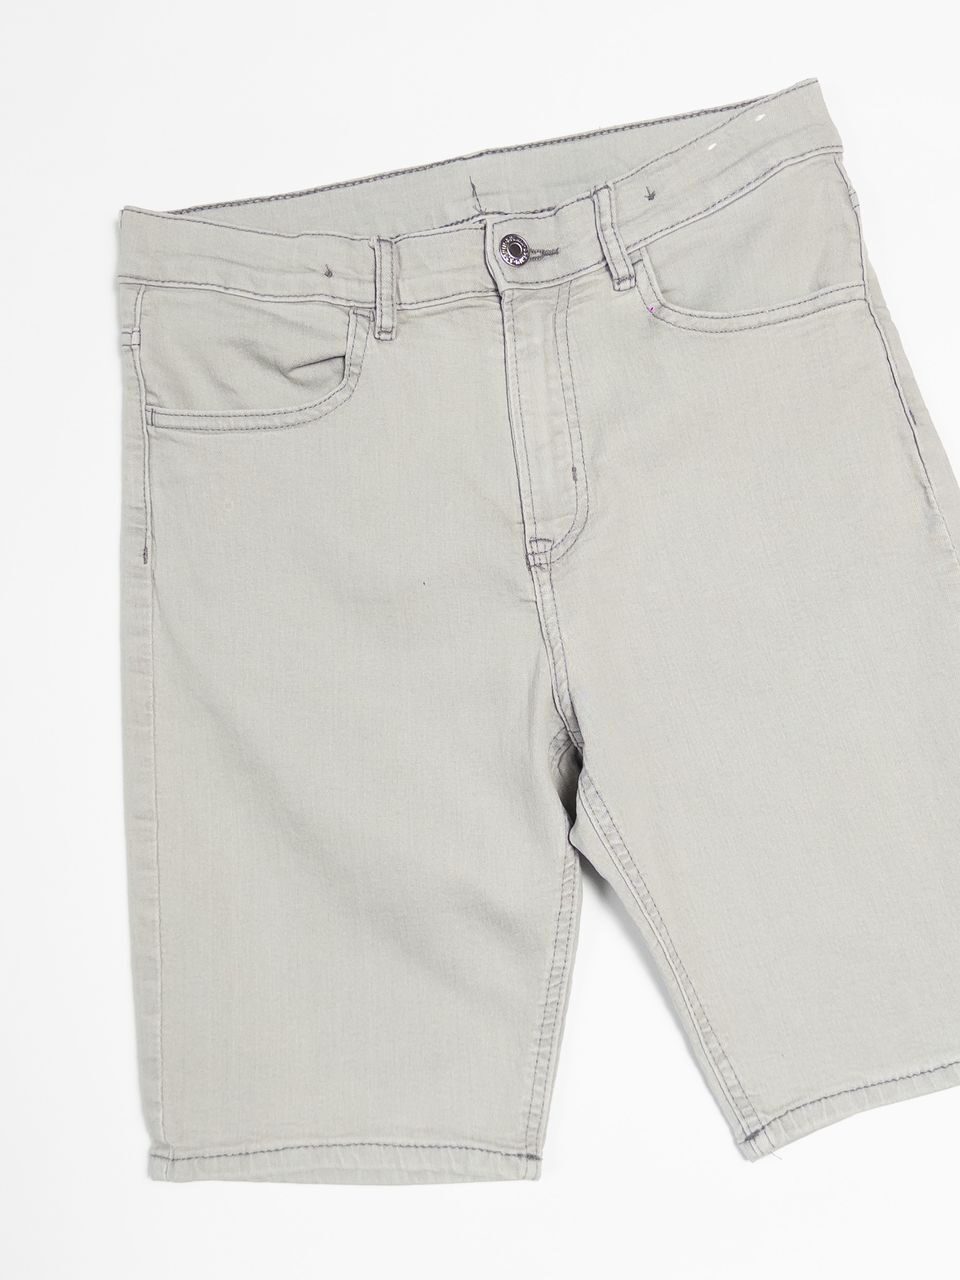 Джинсовые шорты Slim Fit на рост 164 см 13-14 лет H&M